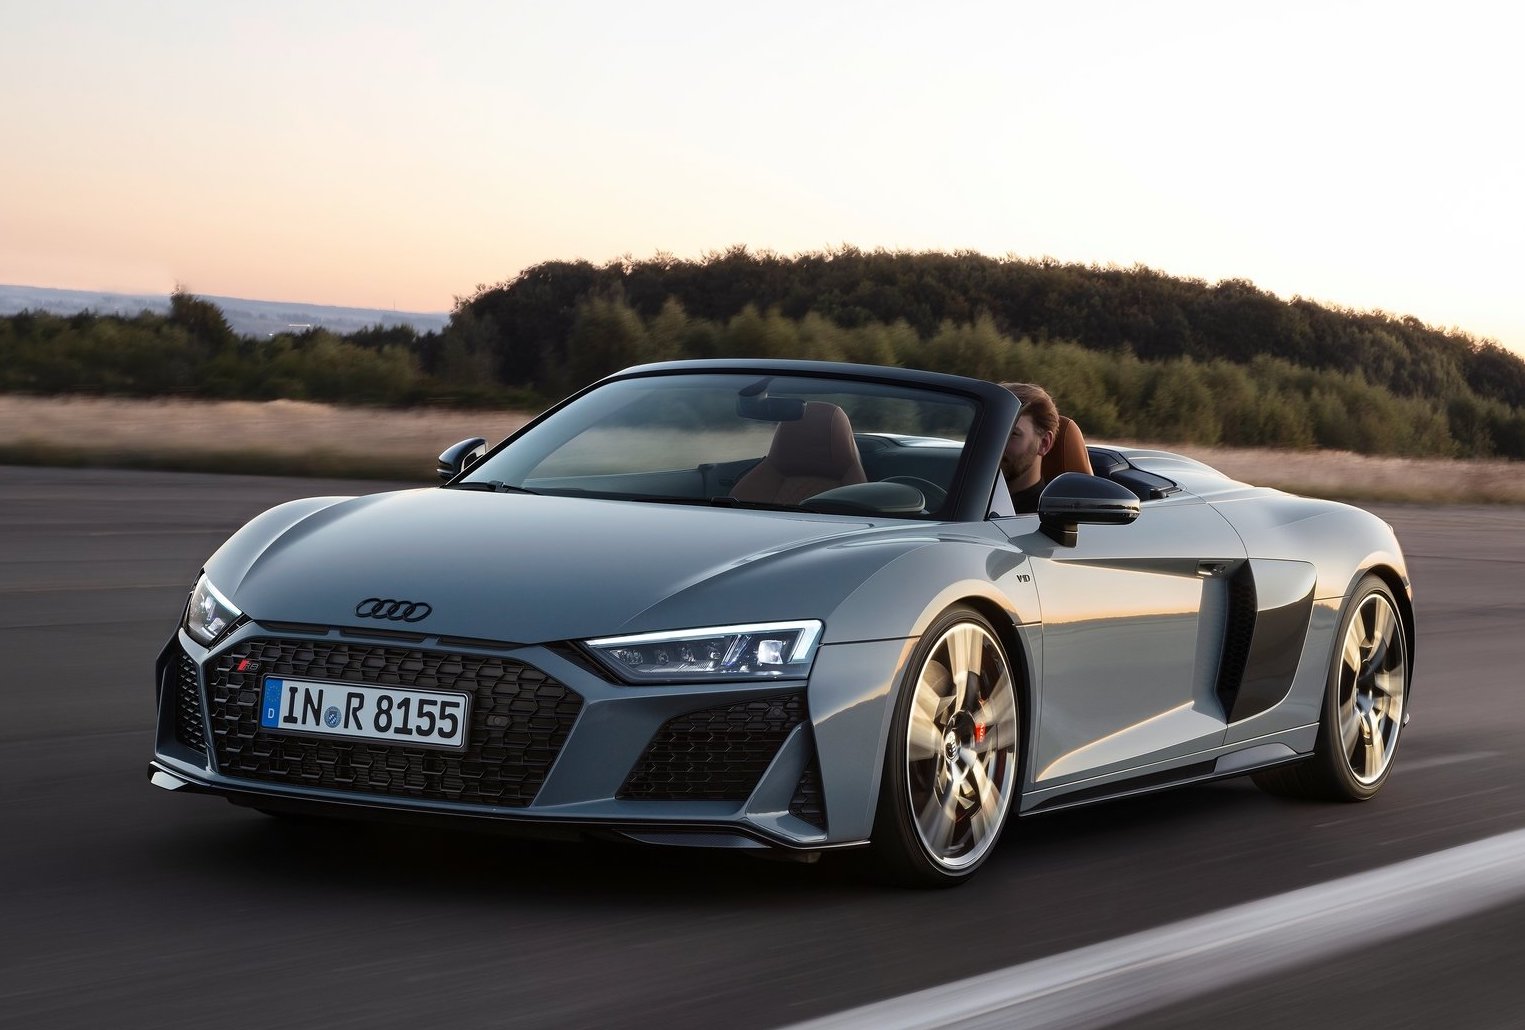 2019 Audi R8 revealed, most powerful V10 yet